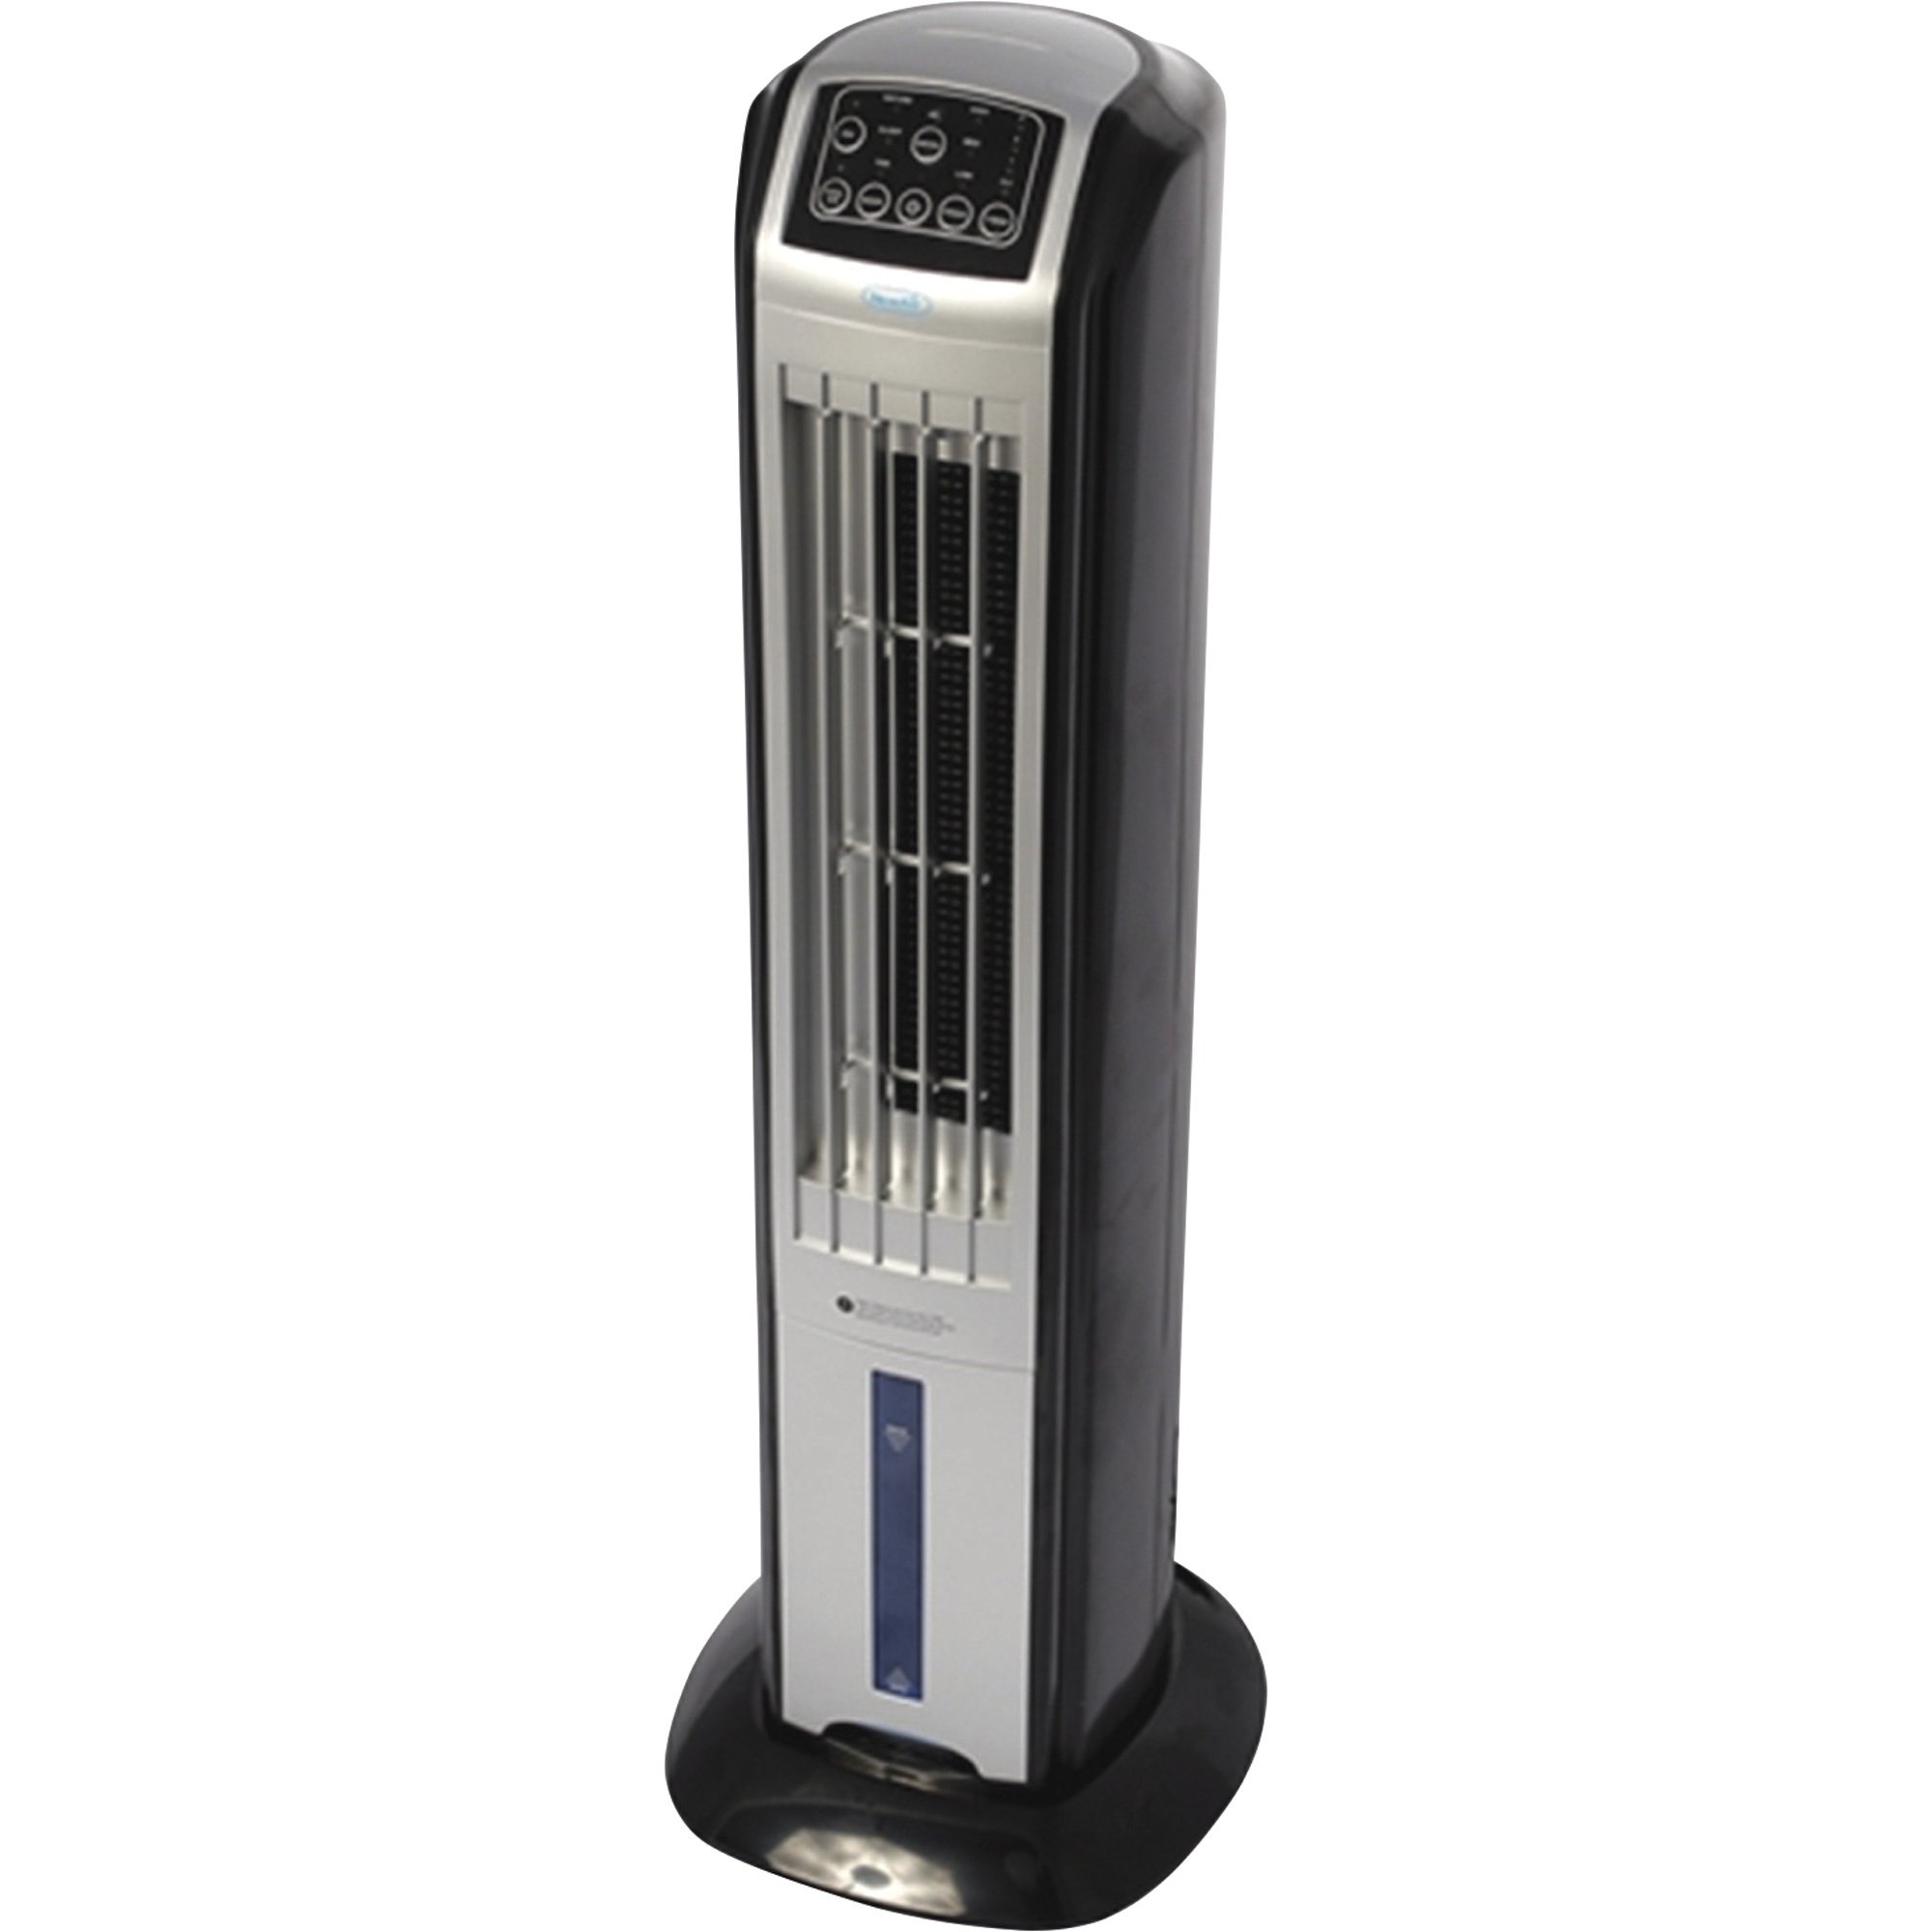 Охлаждение и увлажнение воздуха. Охладитель воздуха с системой увлажнения Keno sy-2619. Напольный кондиционер с увлажнителем воздуха Vitek. Air Cooler Fan увлажнитель воздуха. Вентилятор Оазис с увлажнителем воздуха.